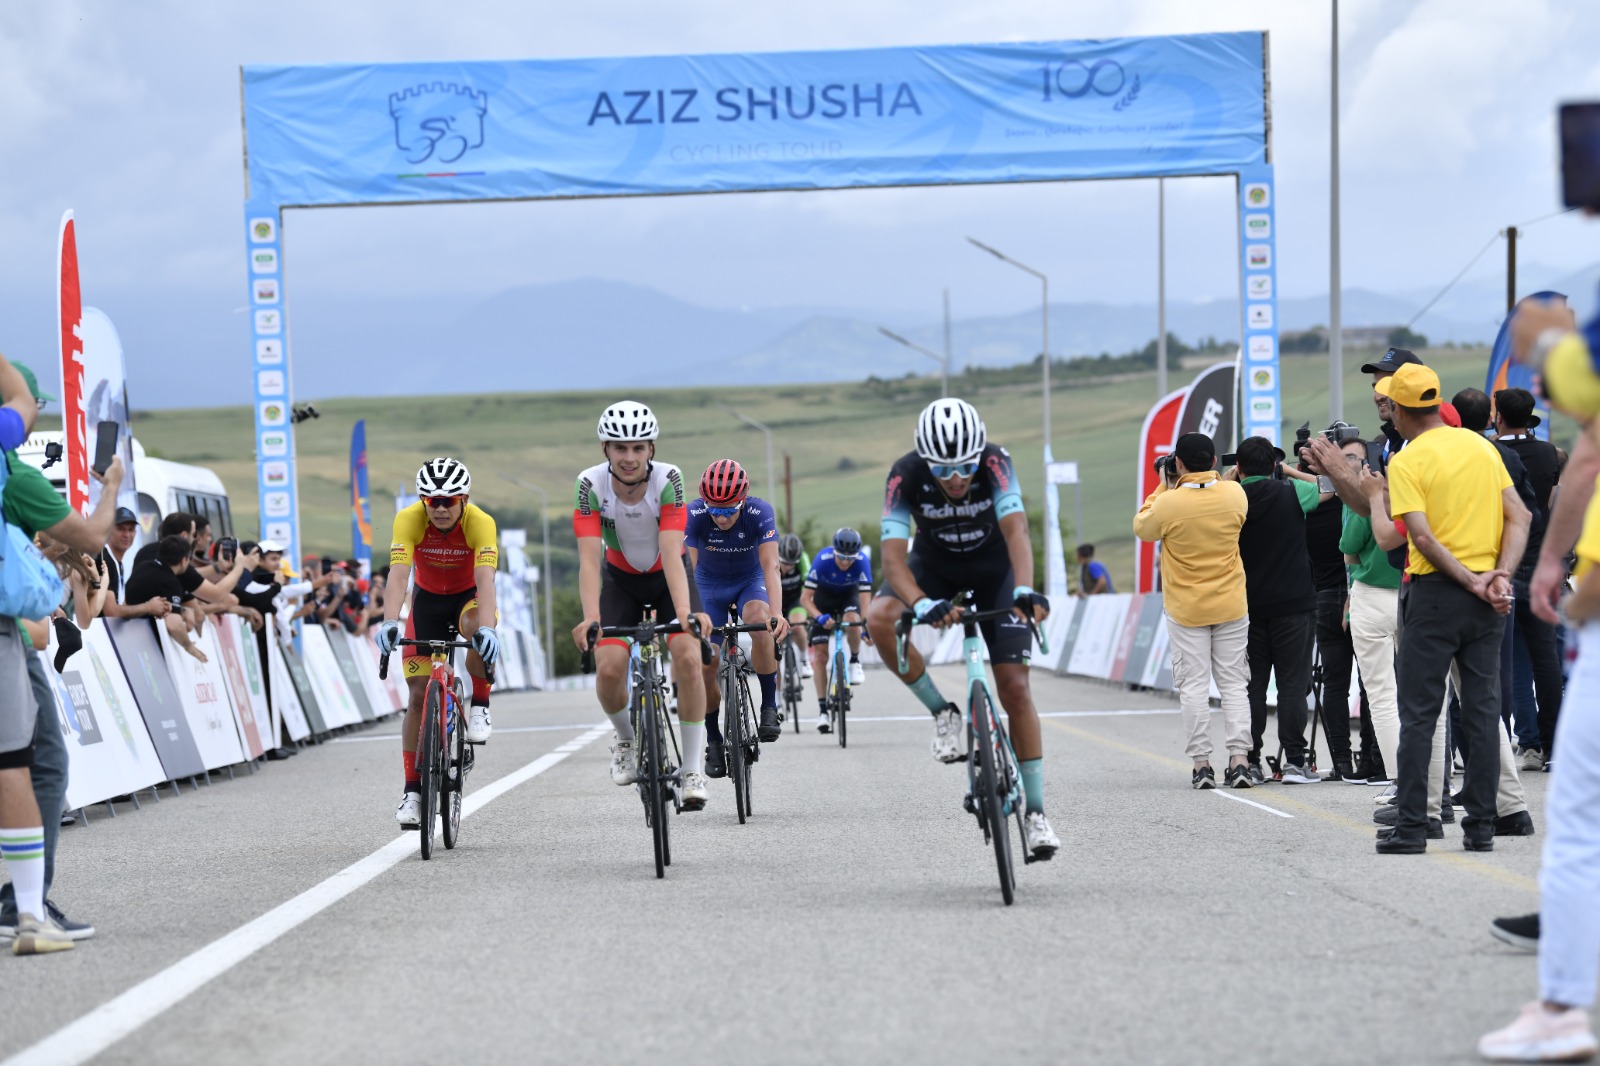 "Əziz Şuşa” beynəlxalq velosiped yarışının birinci mərhələsi başa çatıb